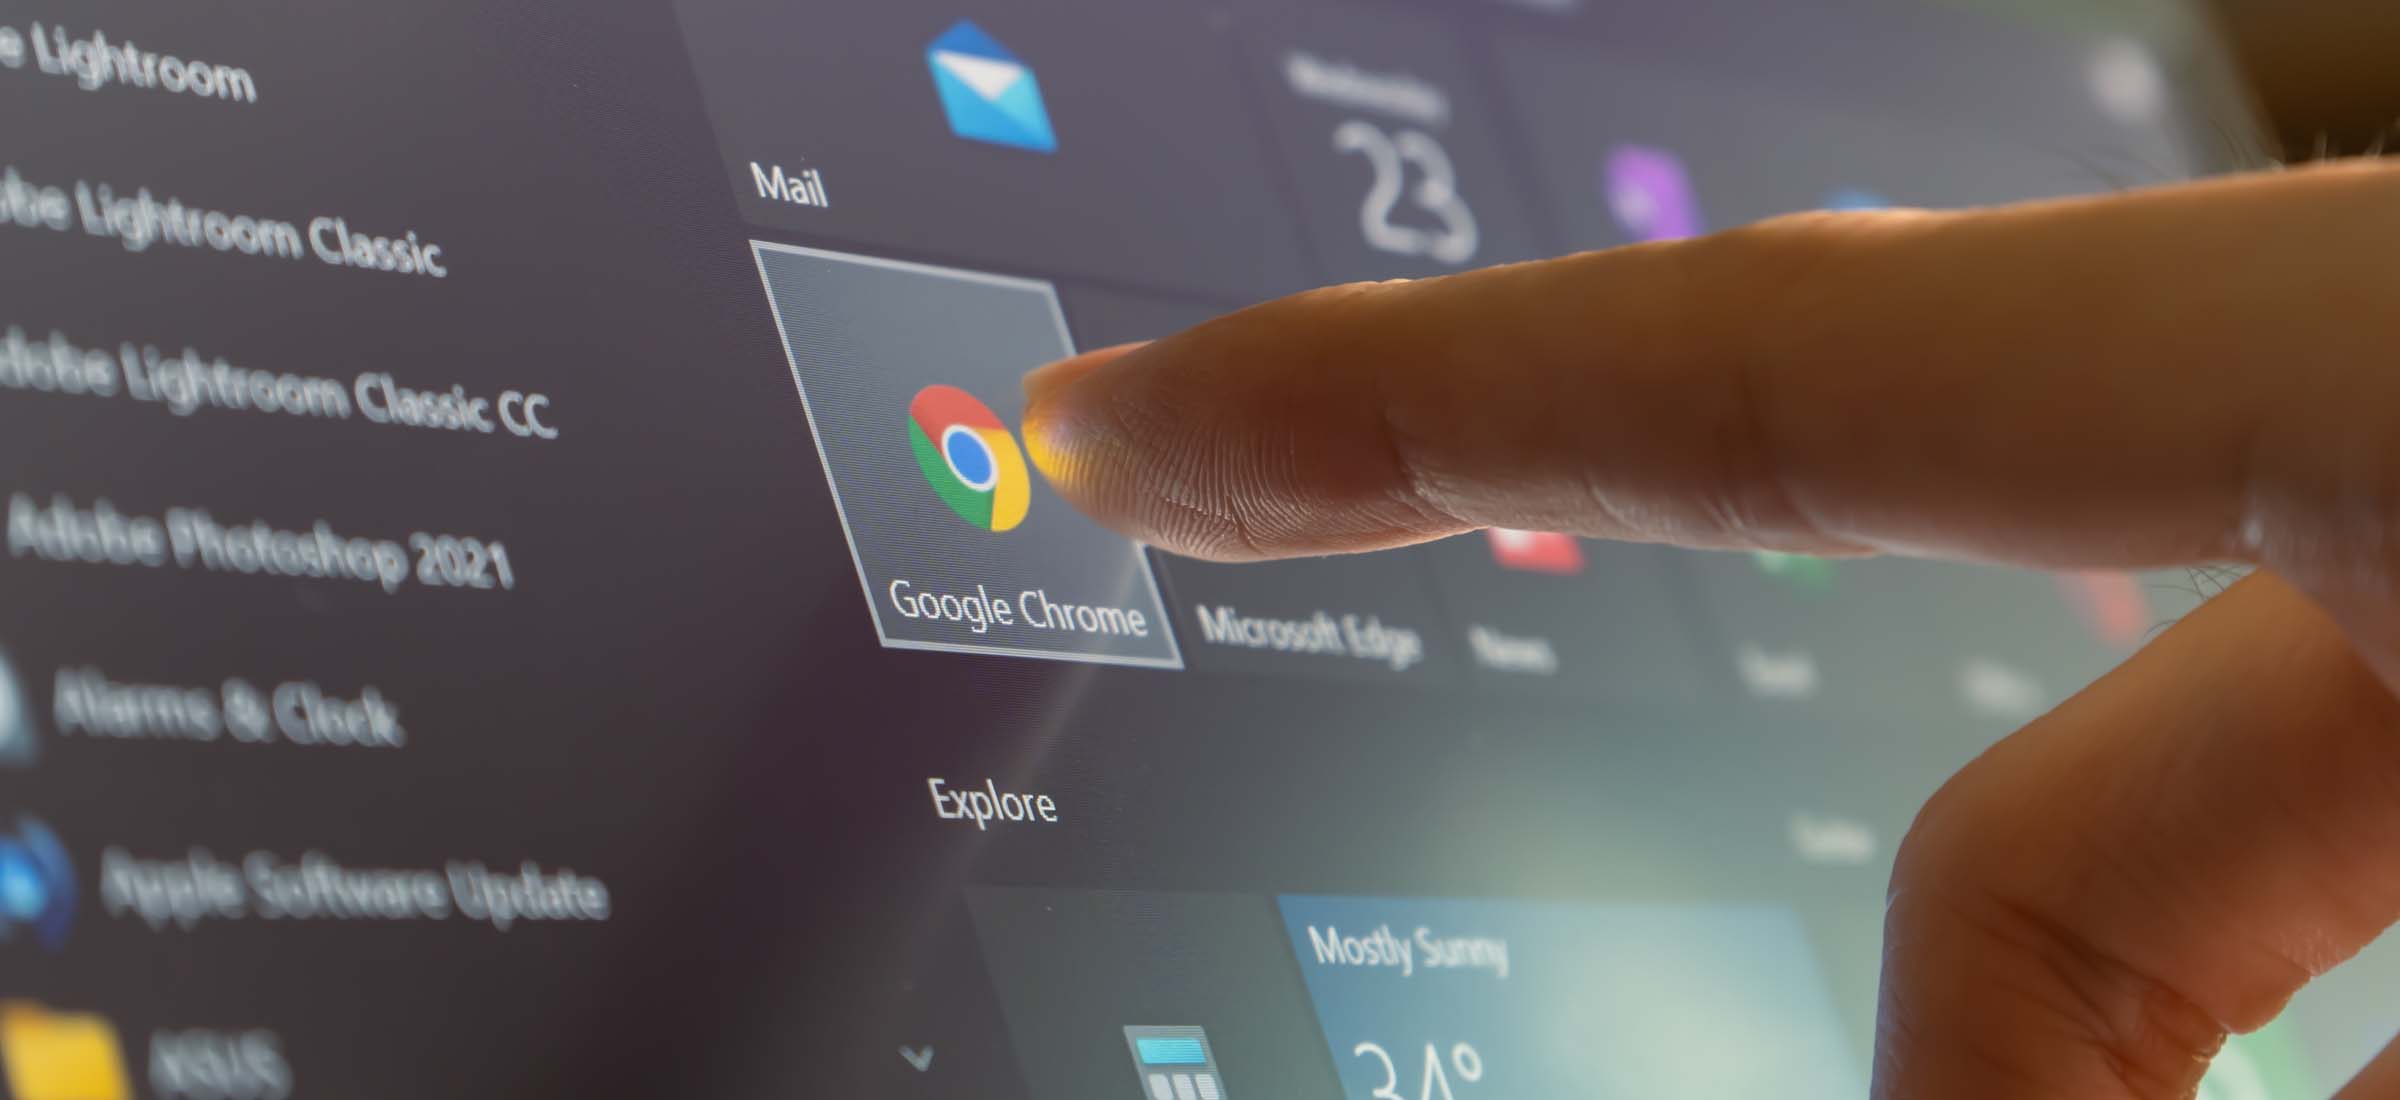 Transforme o Google Chrome com as suas cores preferidas - Internet - SAPO  Tek